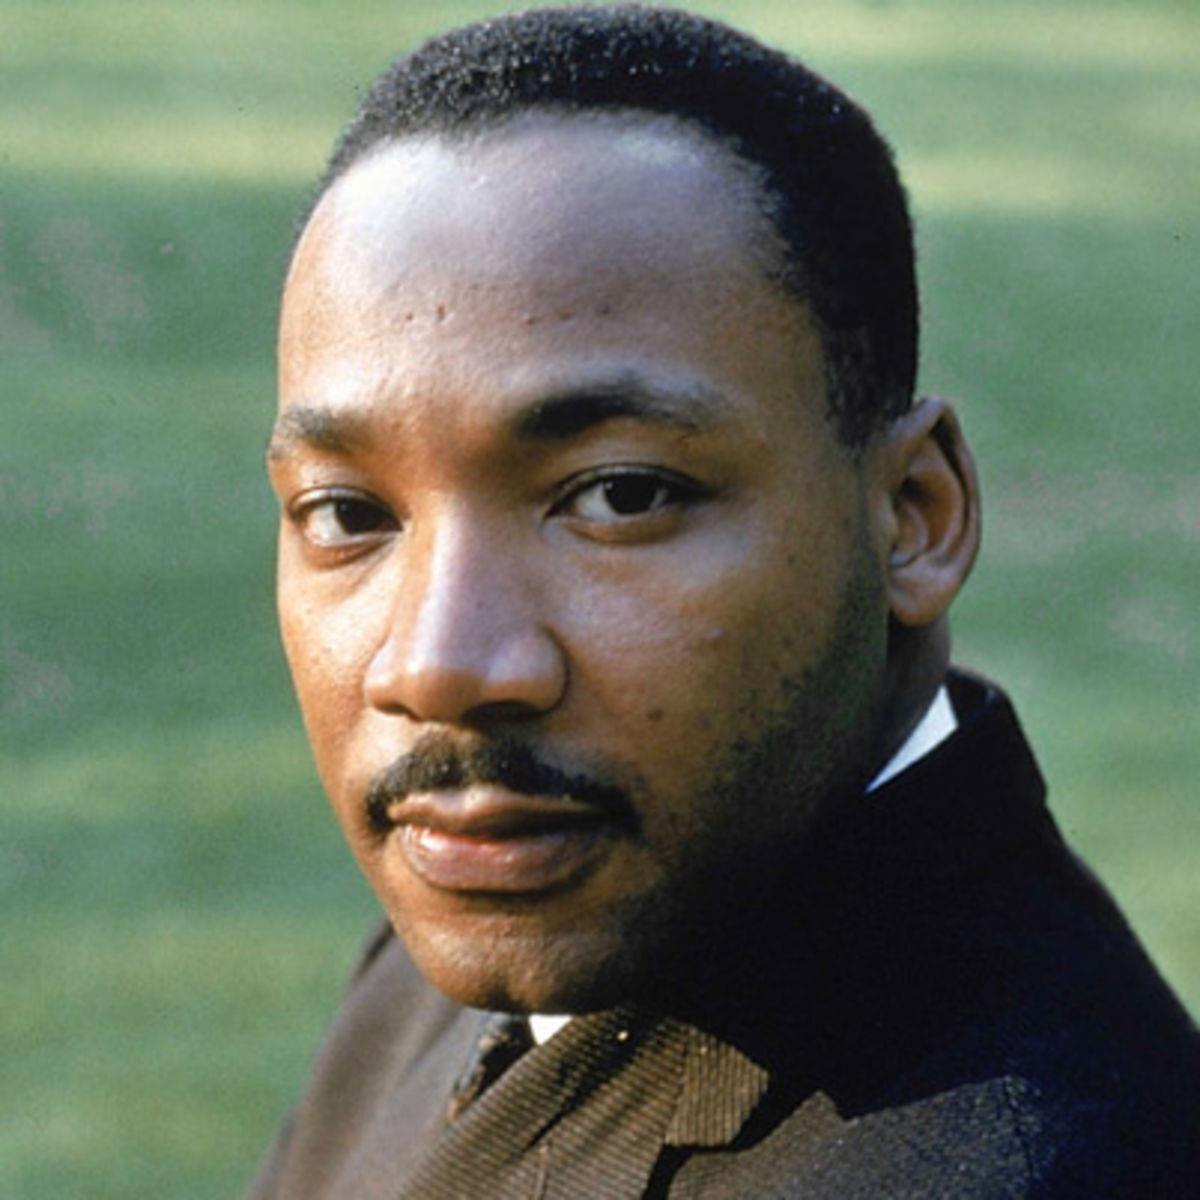 FIGURAS IMPORTANTES Martin Luther King Jr. (1929-1968): foi um pastor protestante e ativista político norteamericano.